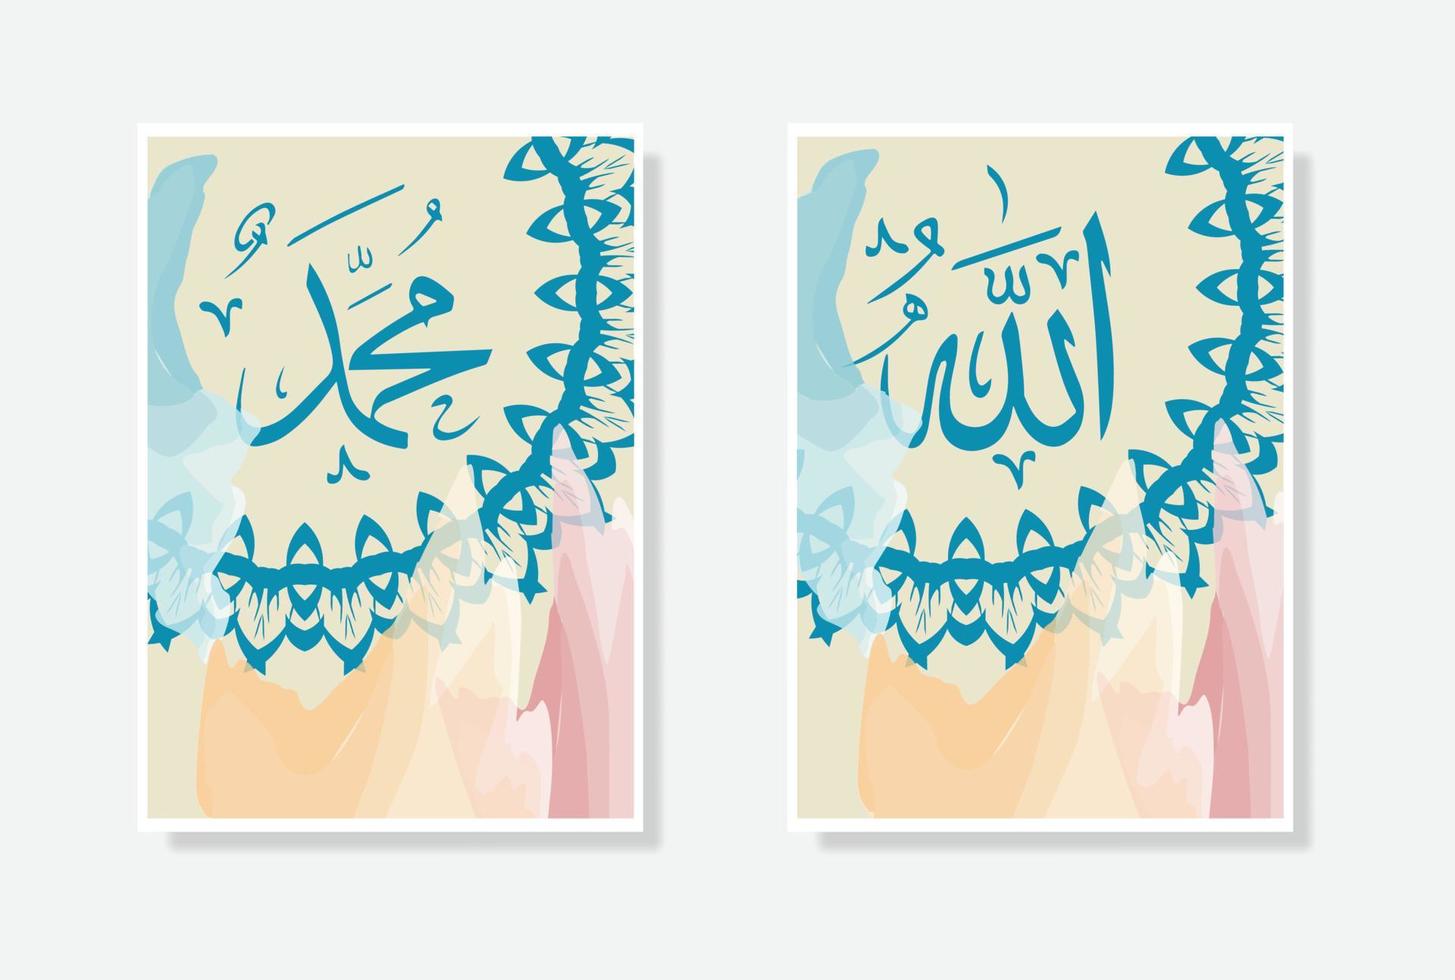 allah muhammad arabicum kalligrafi affisch med vattenfärg och cirkel prydnad objekt, lämplig för Hem och moské dekoration vektor